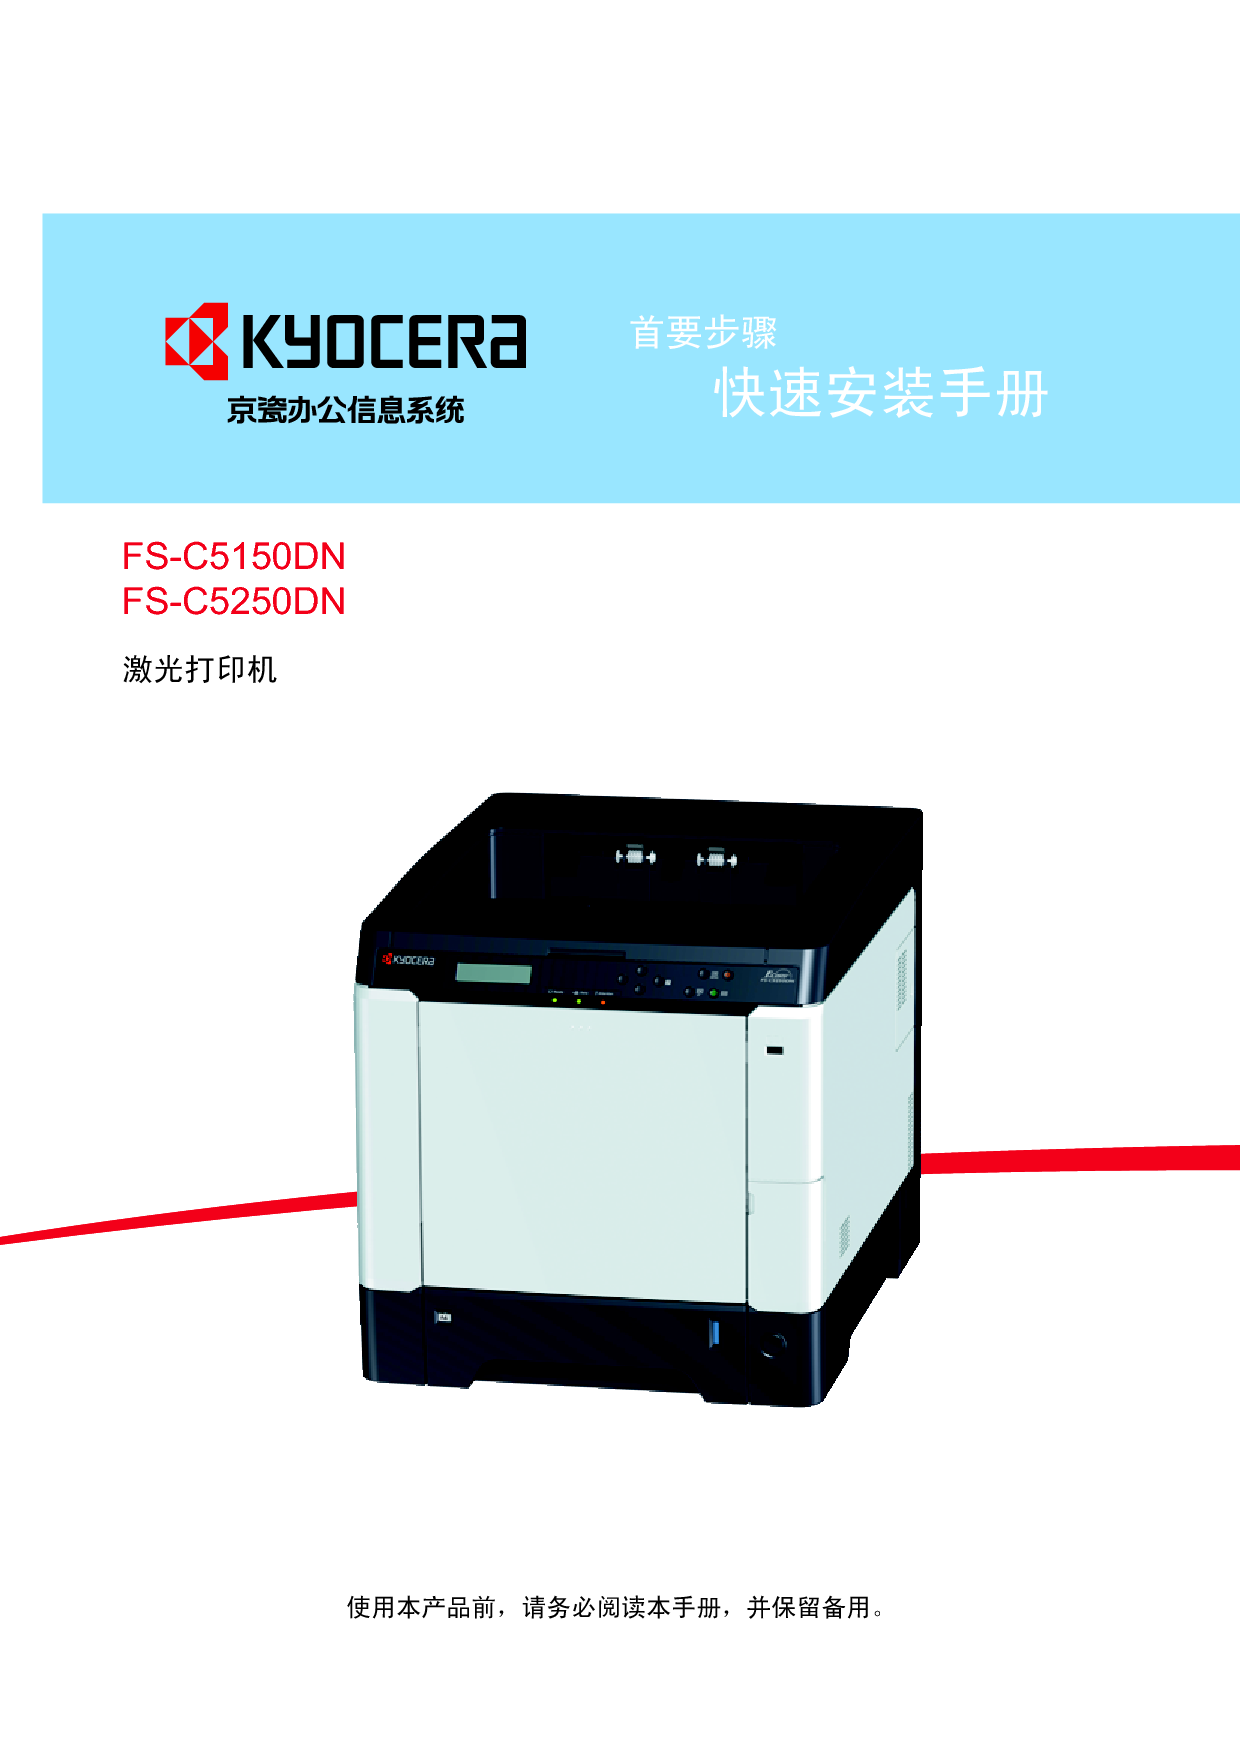 京瓷 Kyocera FS-C5150DN 快速安装指南 封面